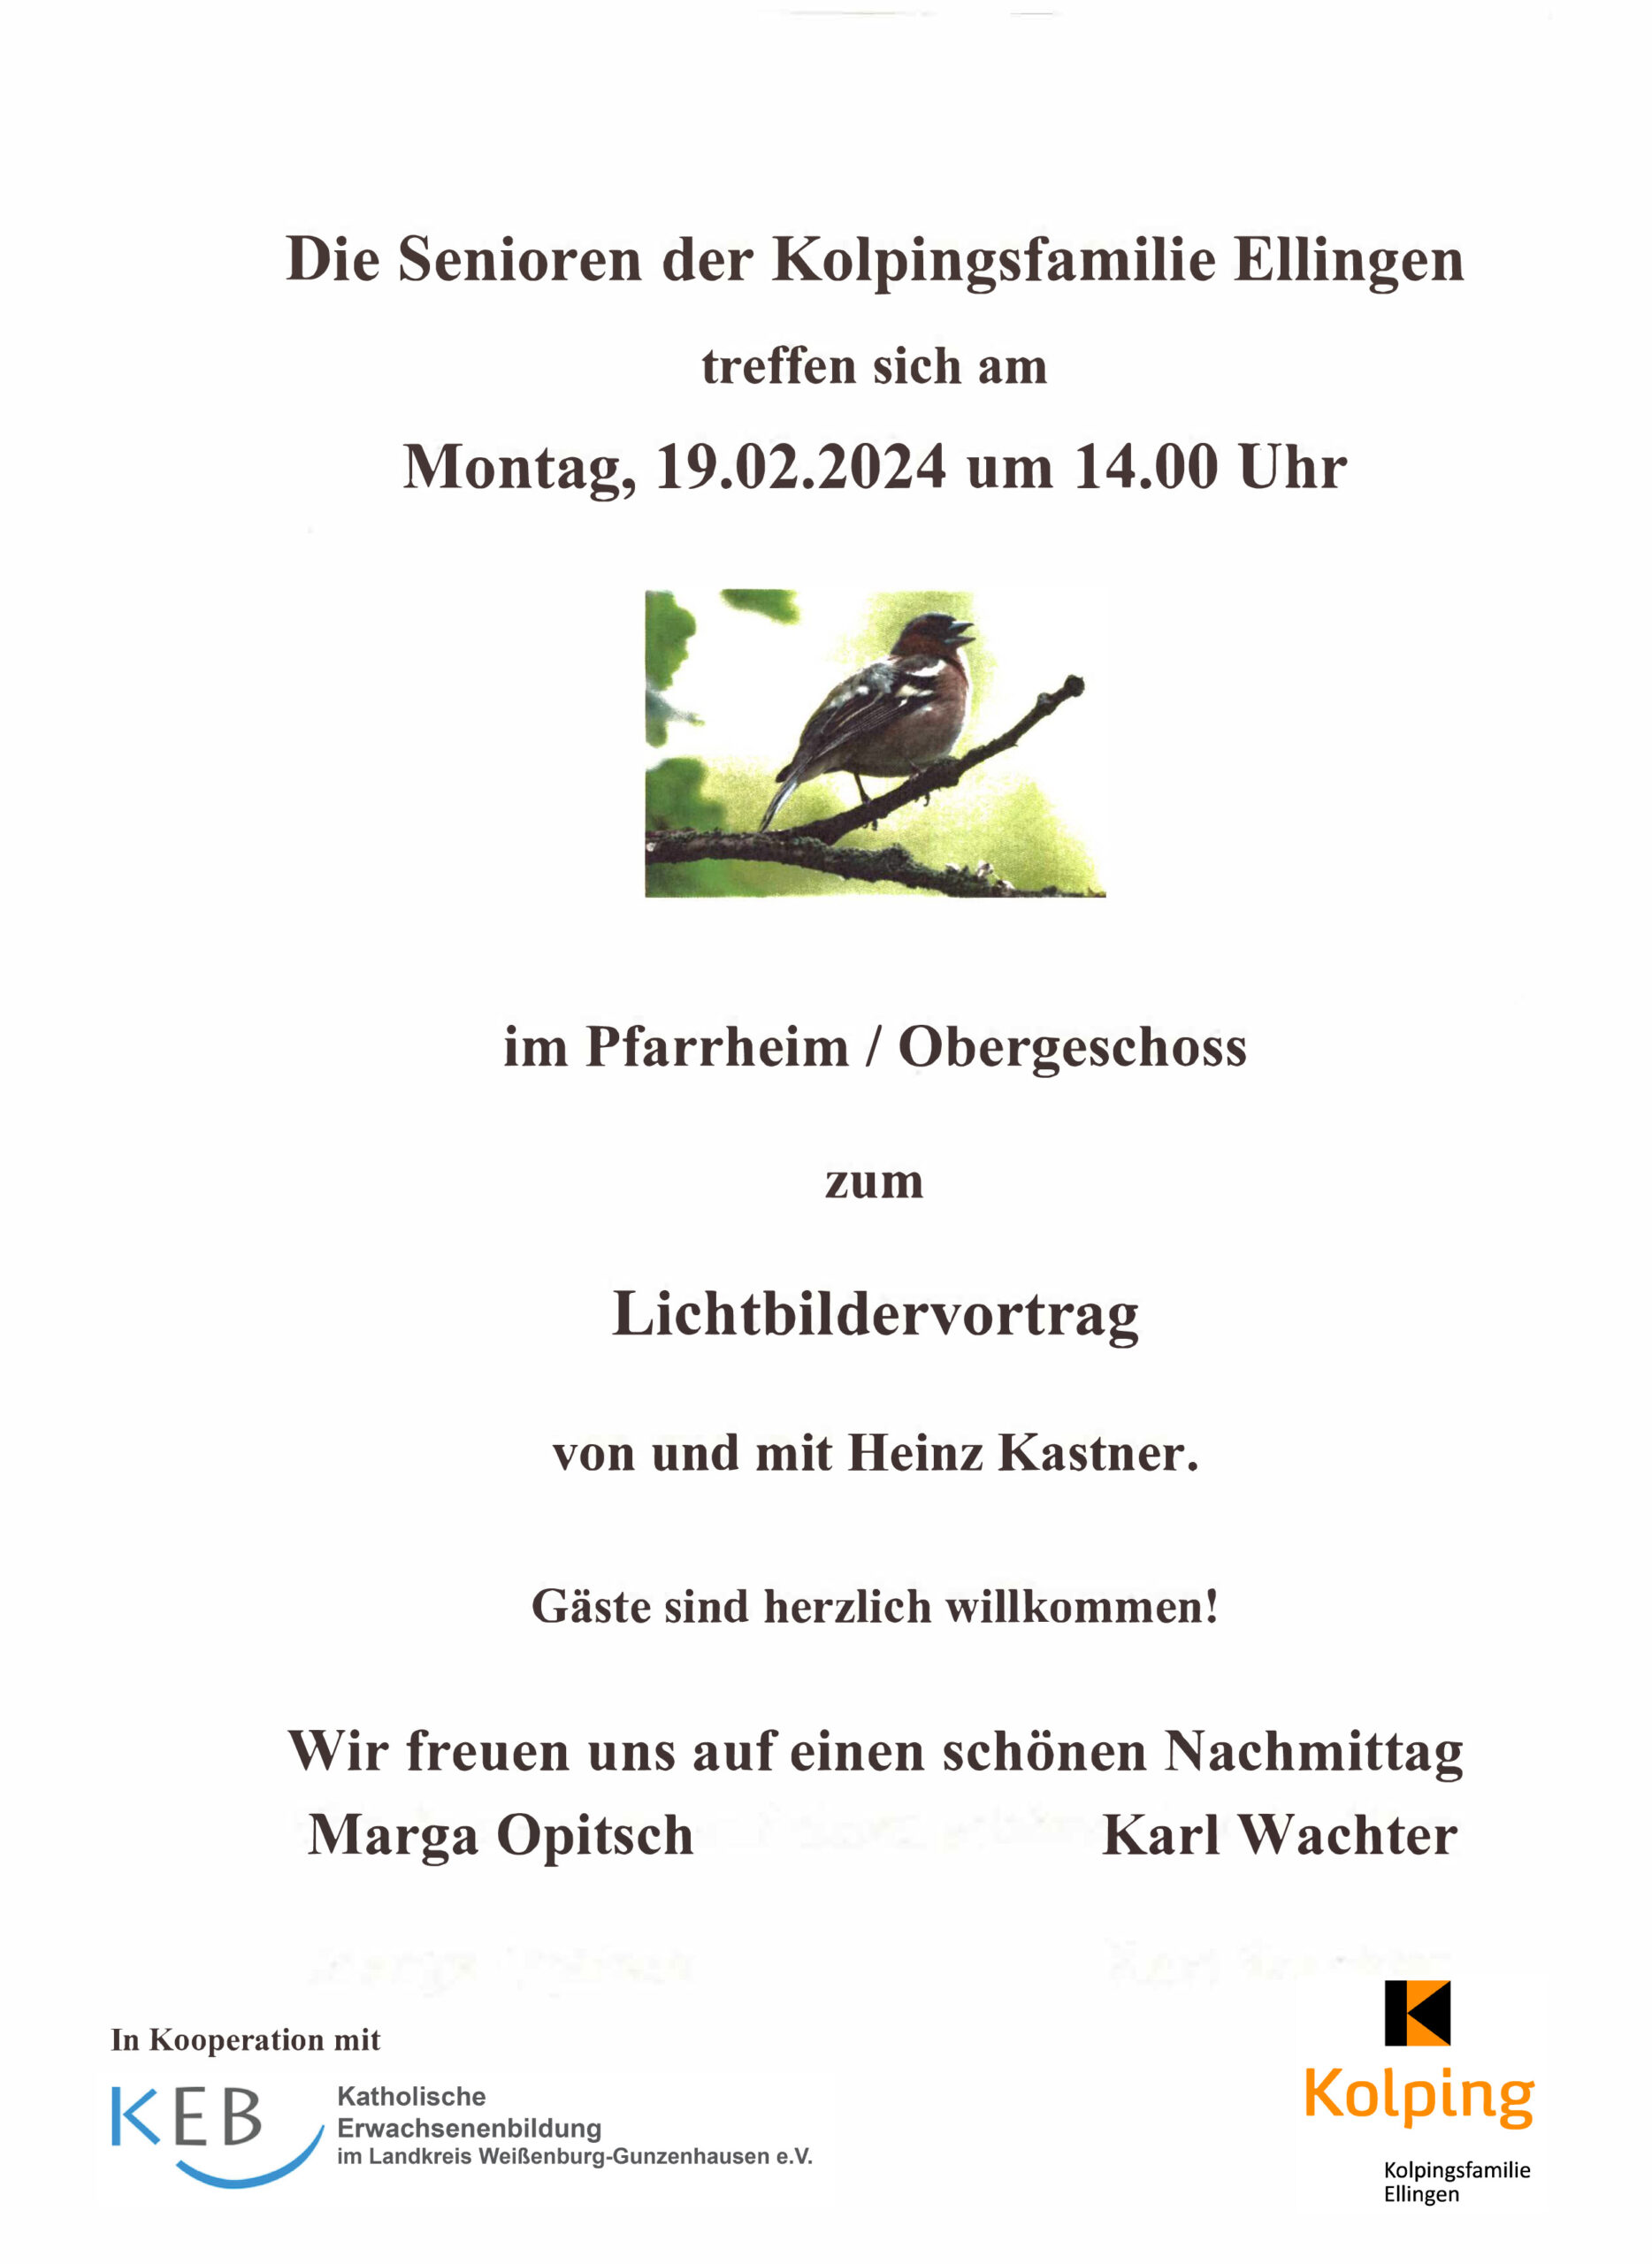 Lichtbildervortrag von Heinz Kastner in Ellingen. Plakat mit Vogel.